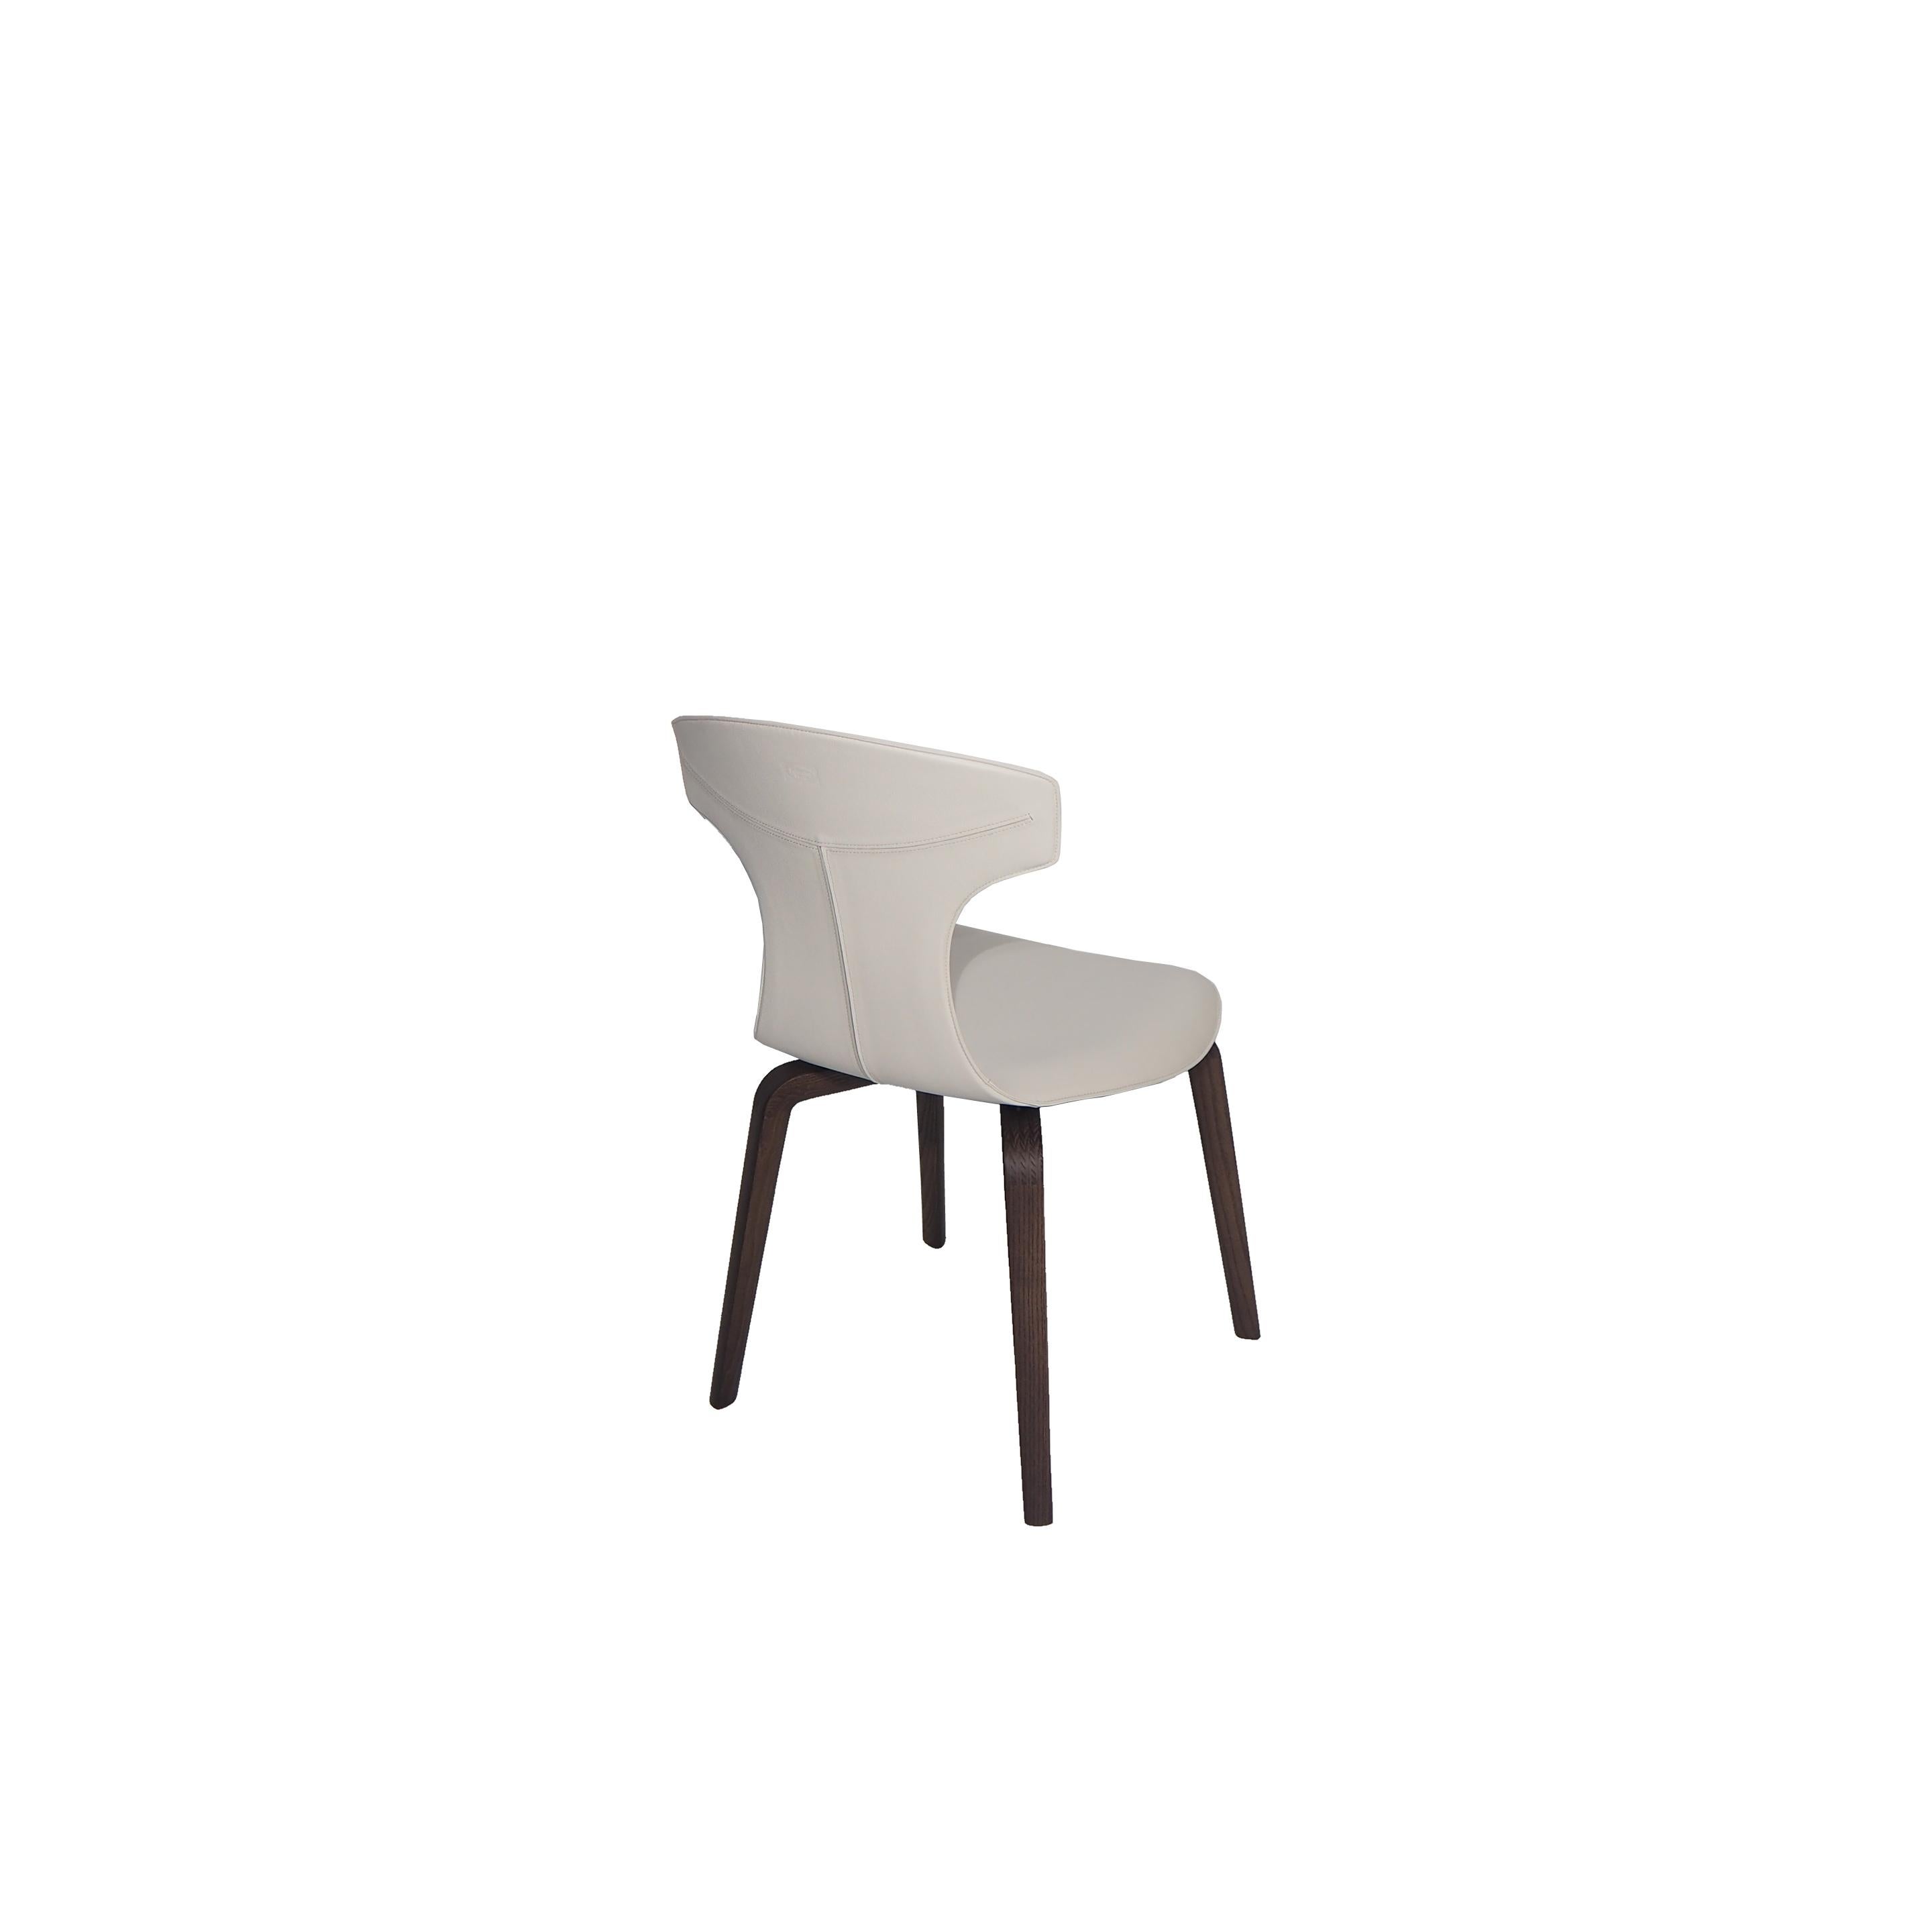 La chaise Montera conçue par Roberto Lazzeroni a une légèreté formelle qui exprime le charme sensoriel de ses matériaux. Dans la série Montera, la coque est produite à partir de contreplaqué de hêtre moulé, courbé et pressé à la vapeur. Rembourrage